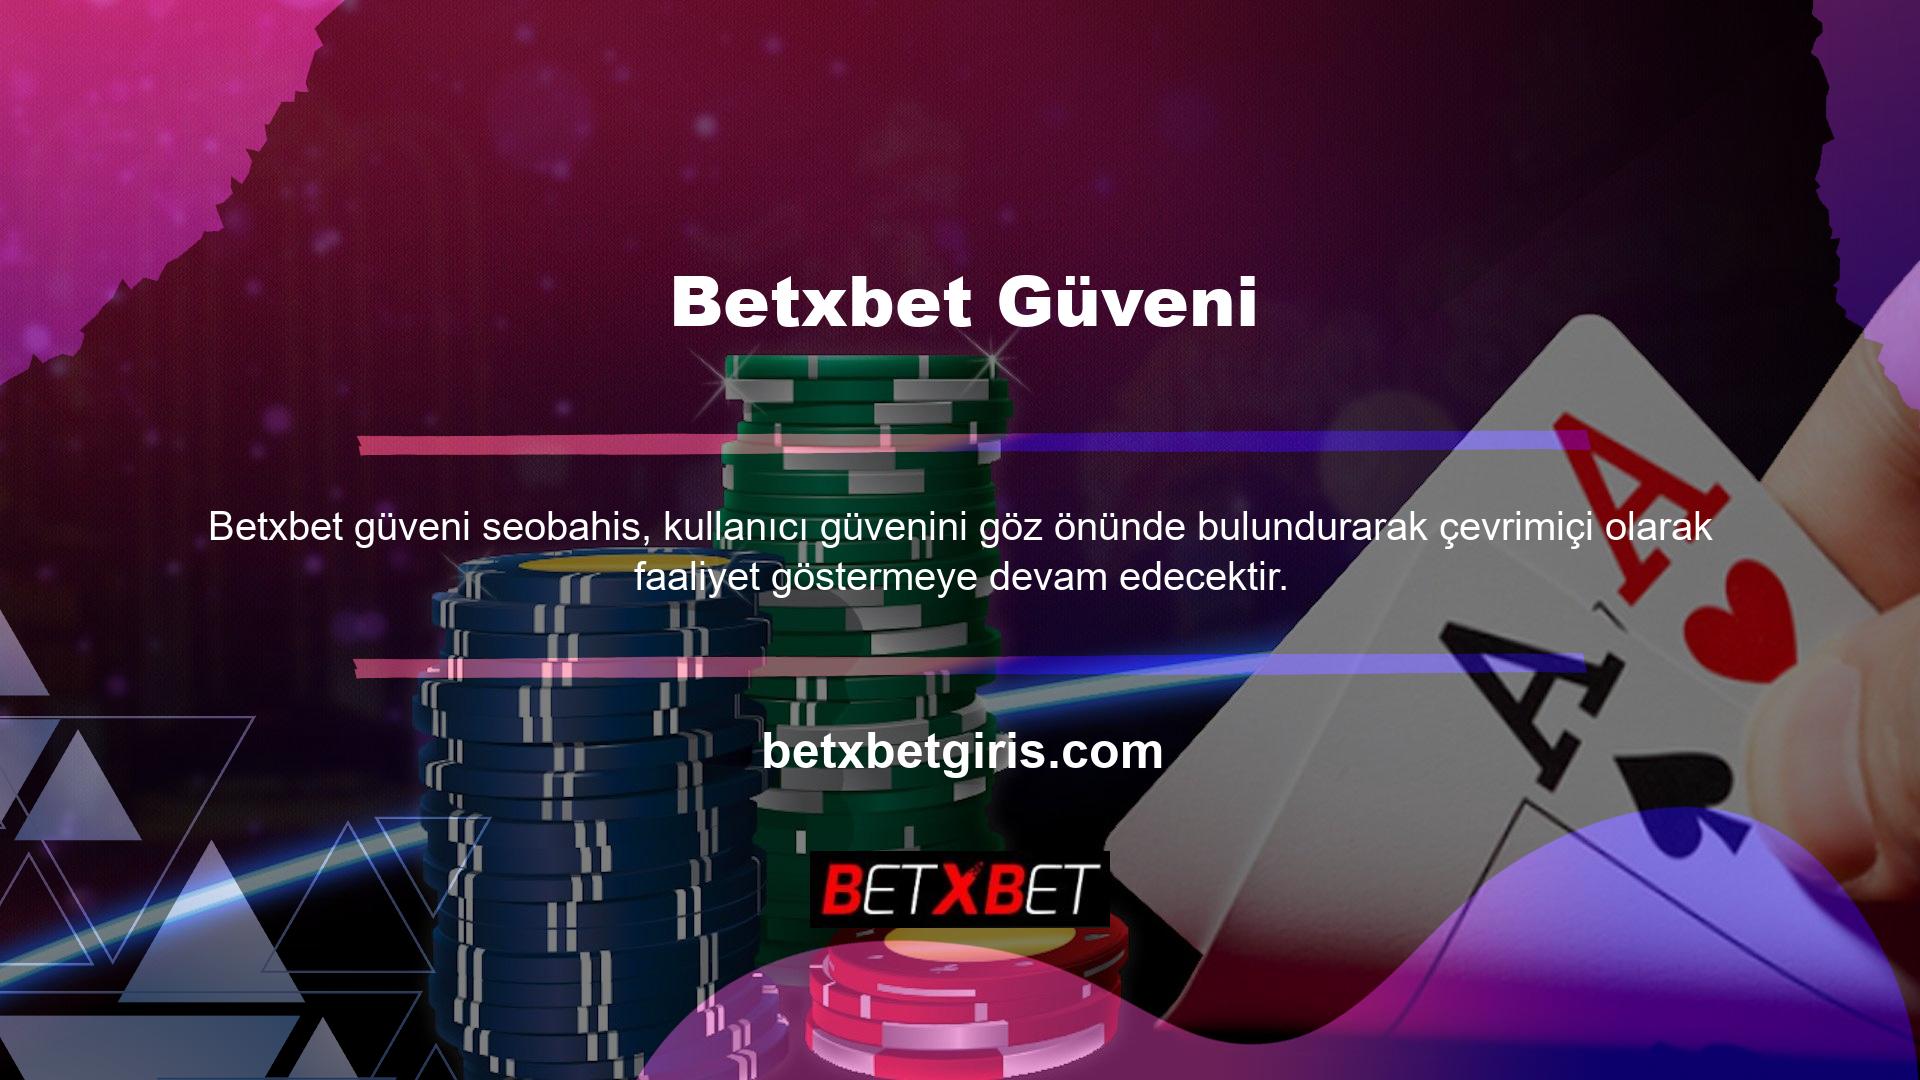 Türk casino sitelerine erişim adresleri engellendi